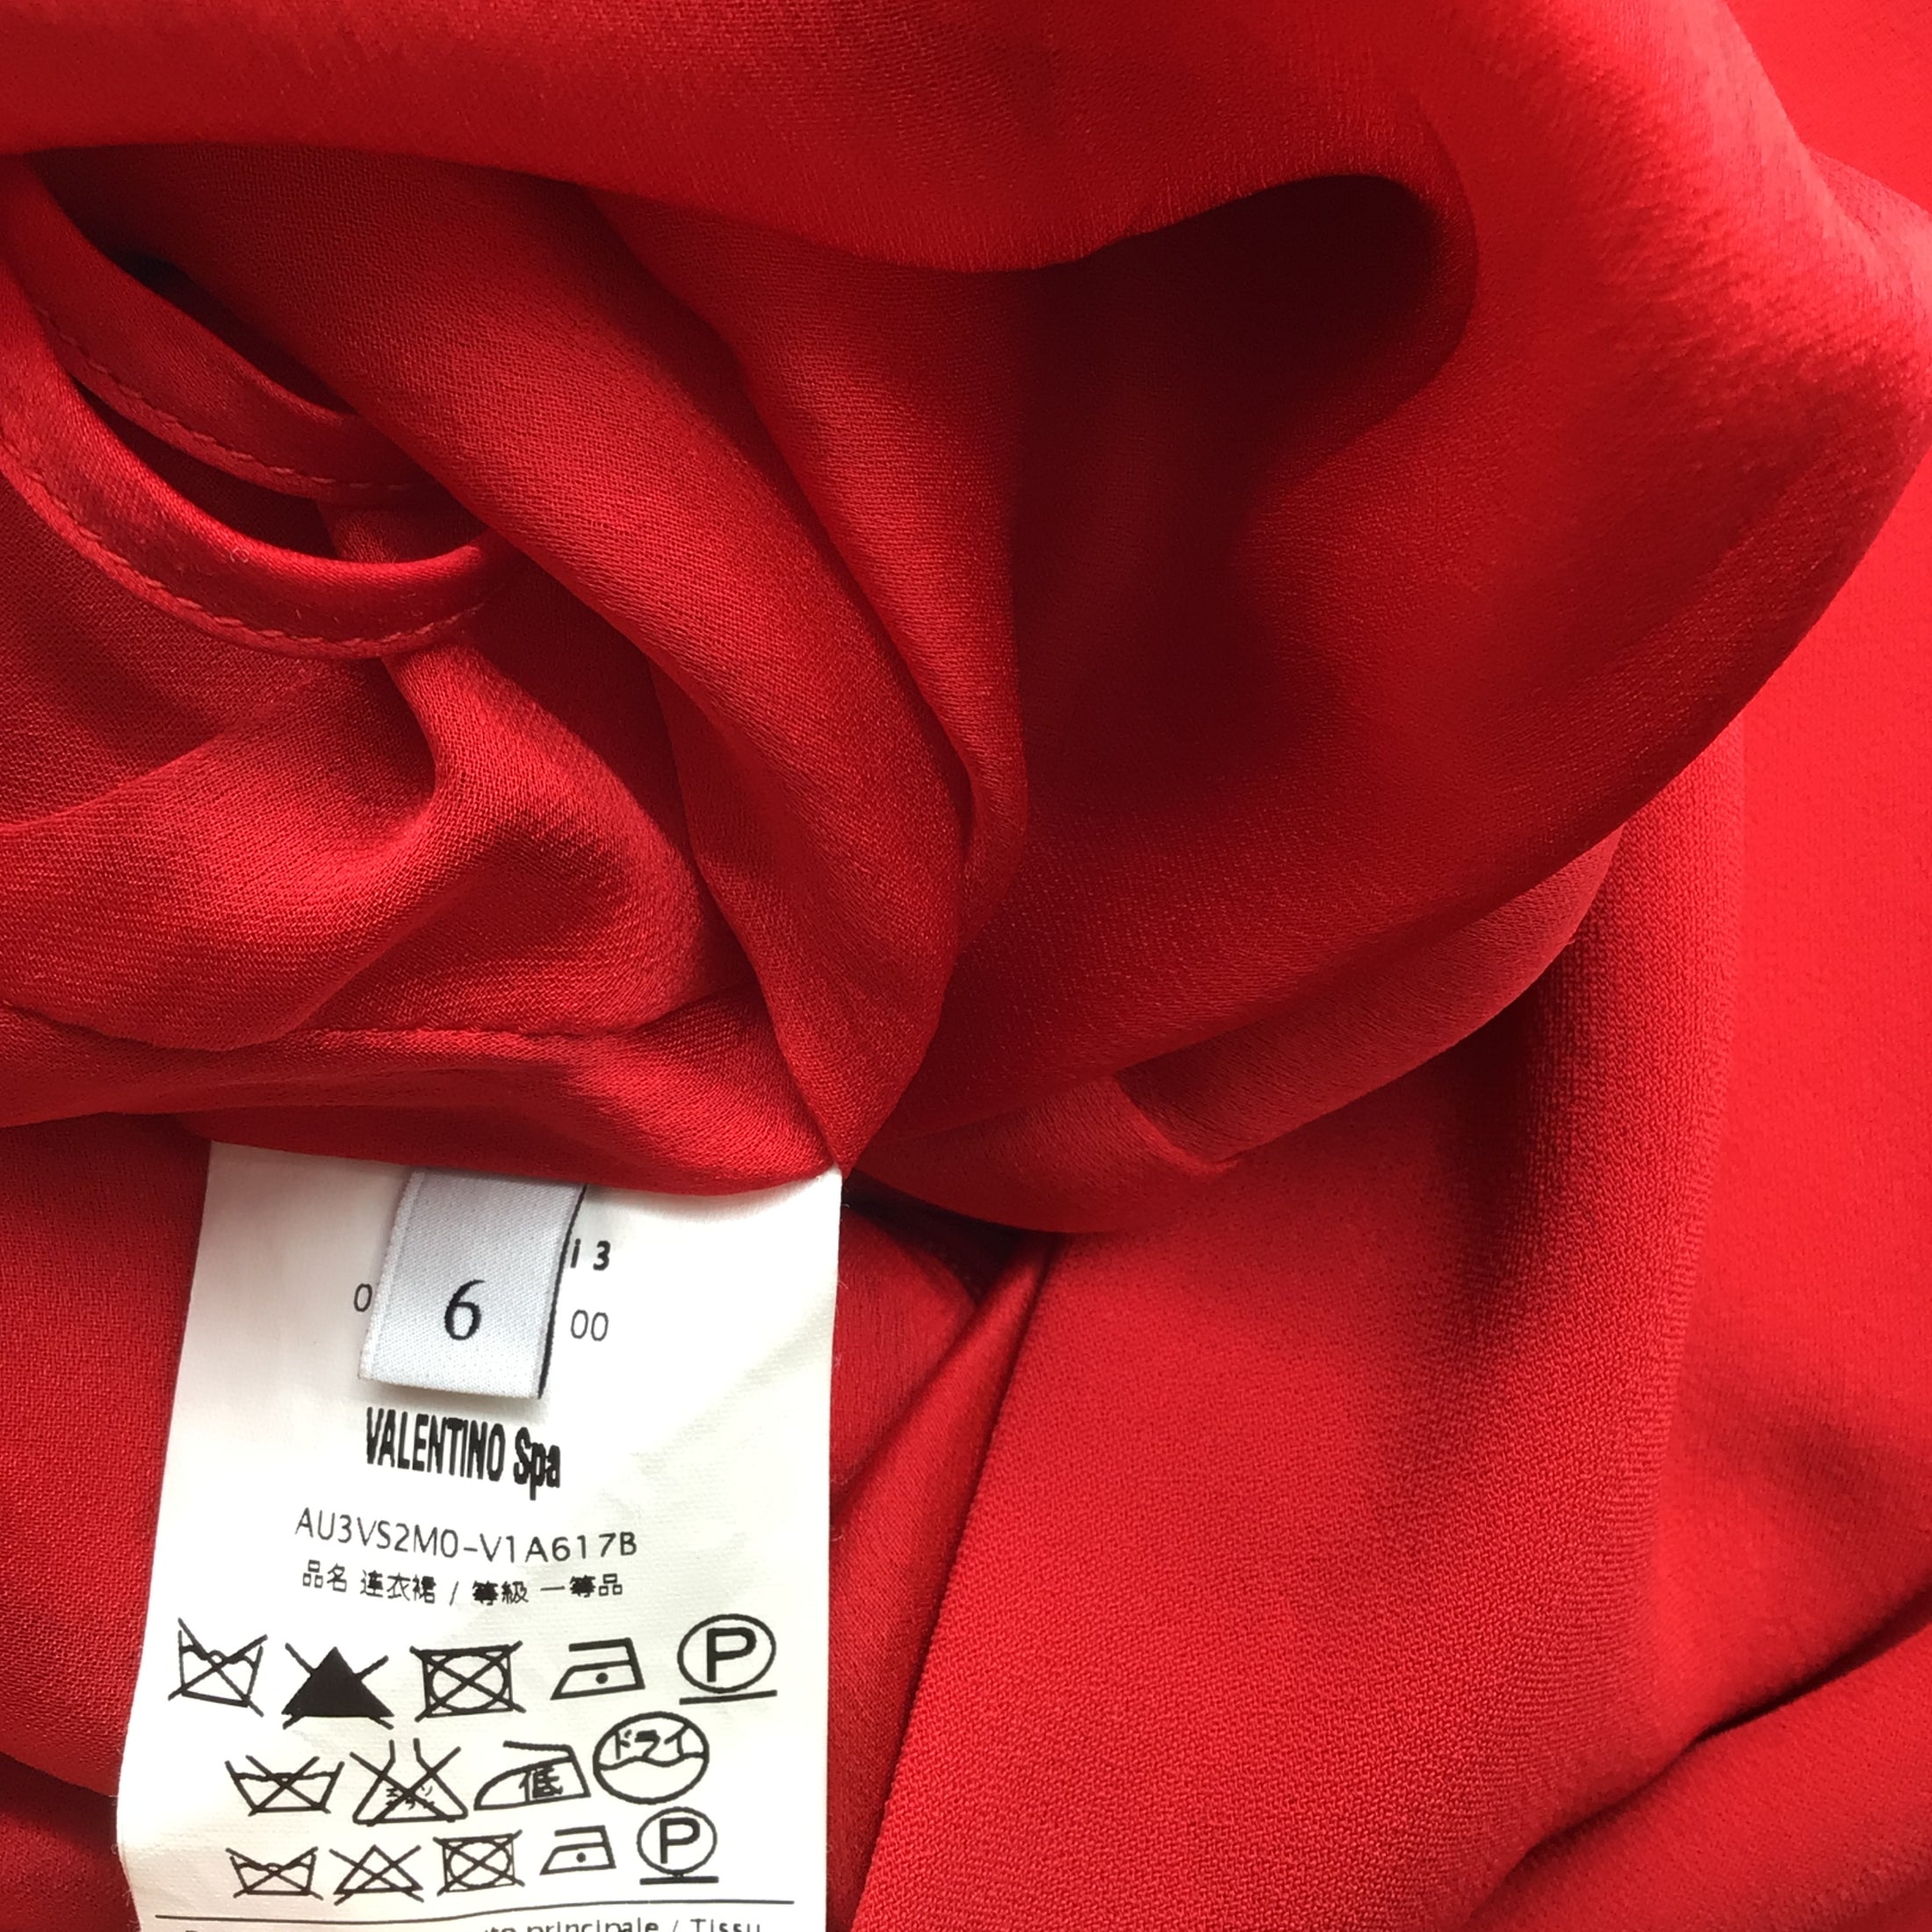 Valentino Red Ruffled Sleeveless Crepe Dress